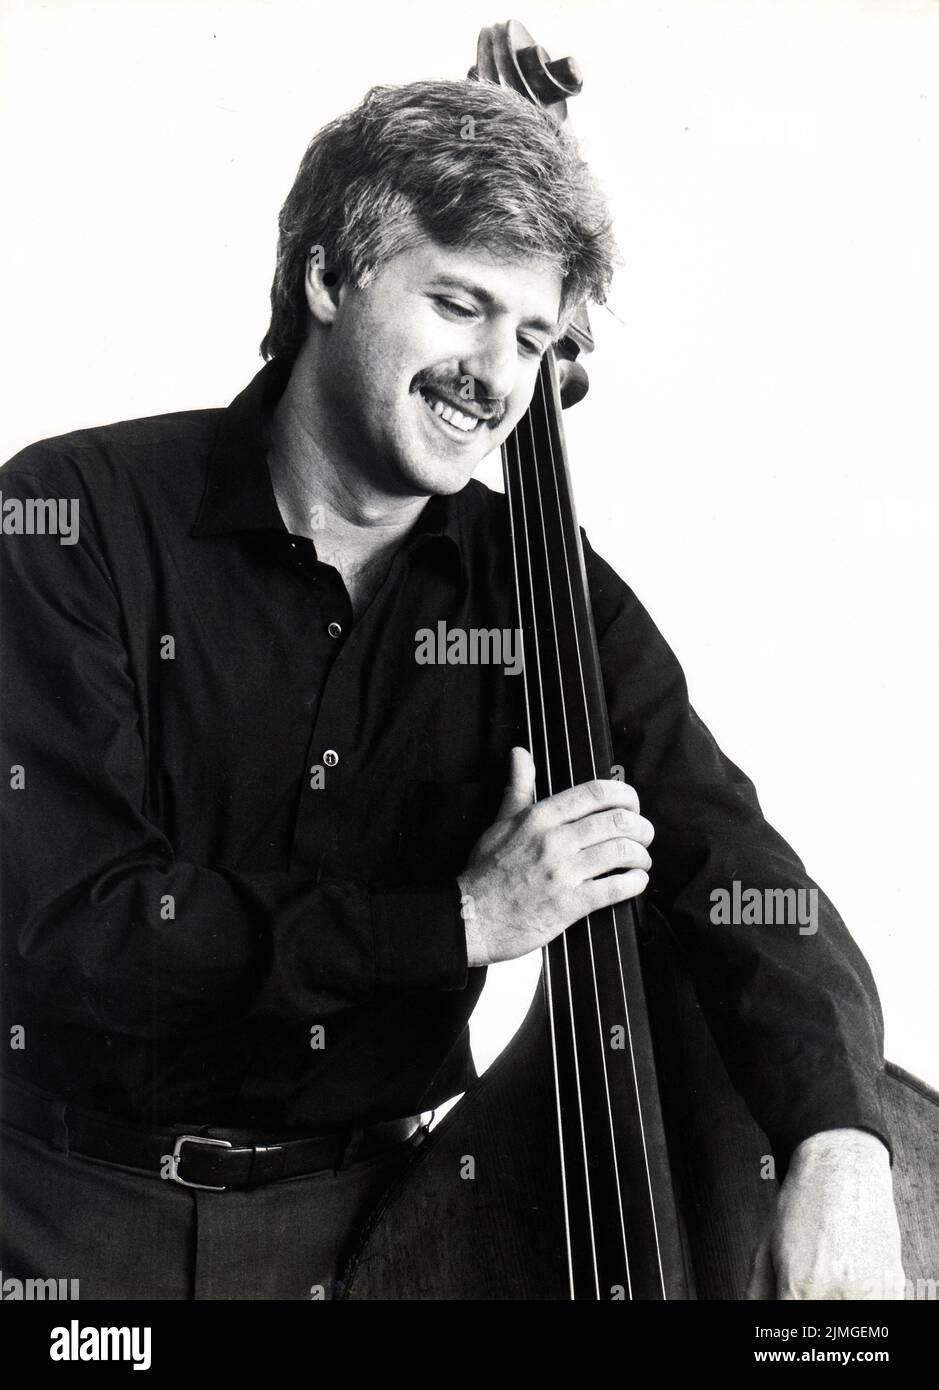 Posado retrato del bajista de jazz Harvie S aka Harvie Swartz con su instrumento, en Manhattan alrededor de 1985. Foto de stock